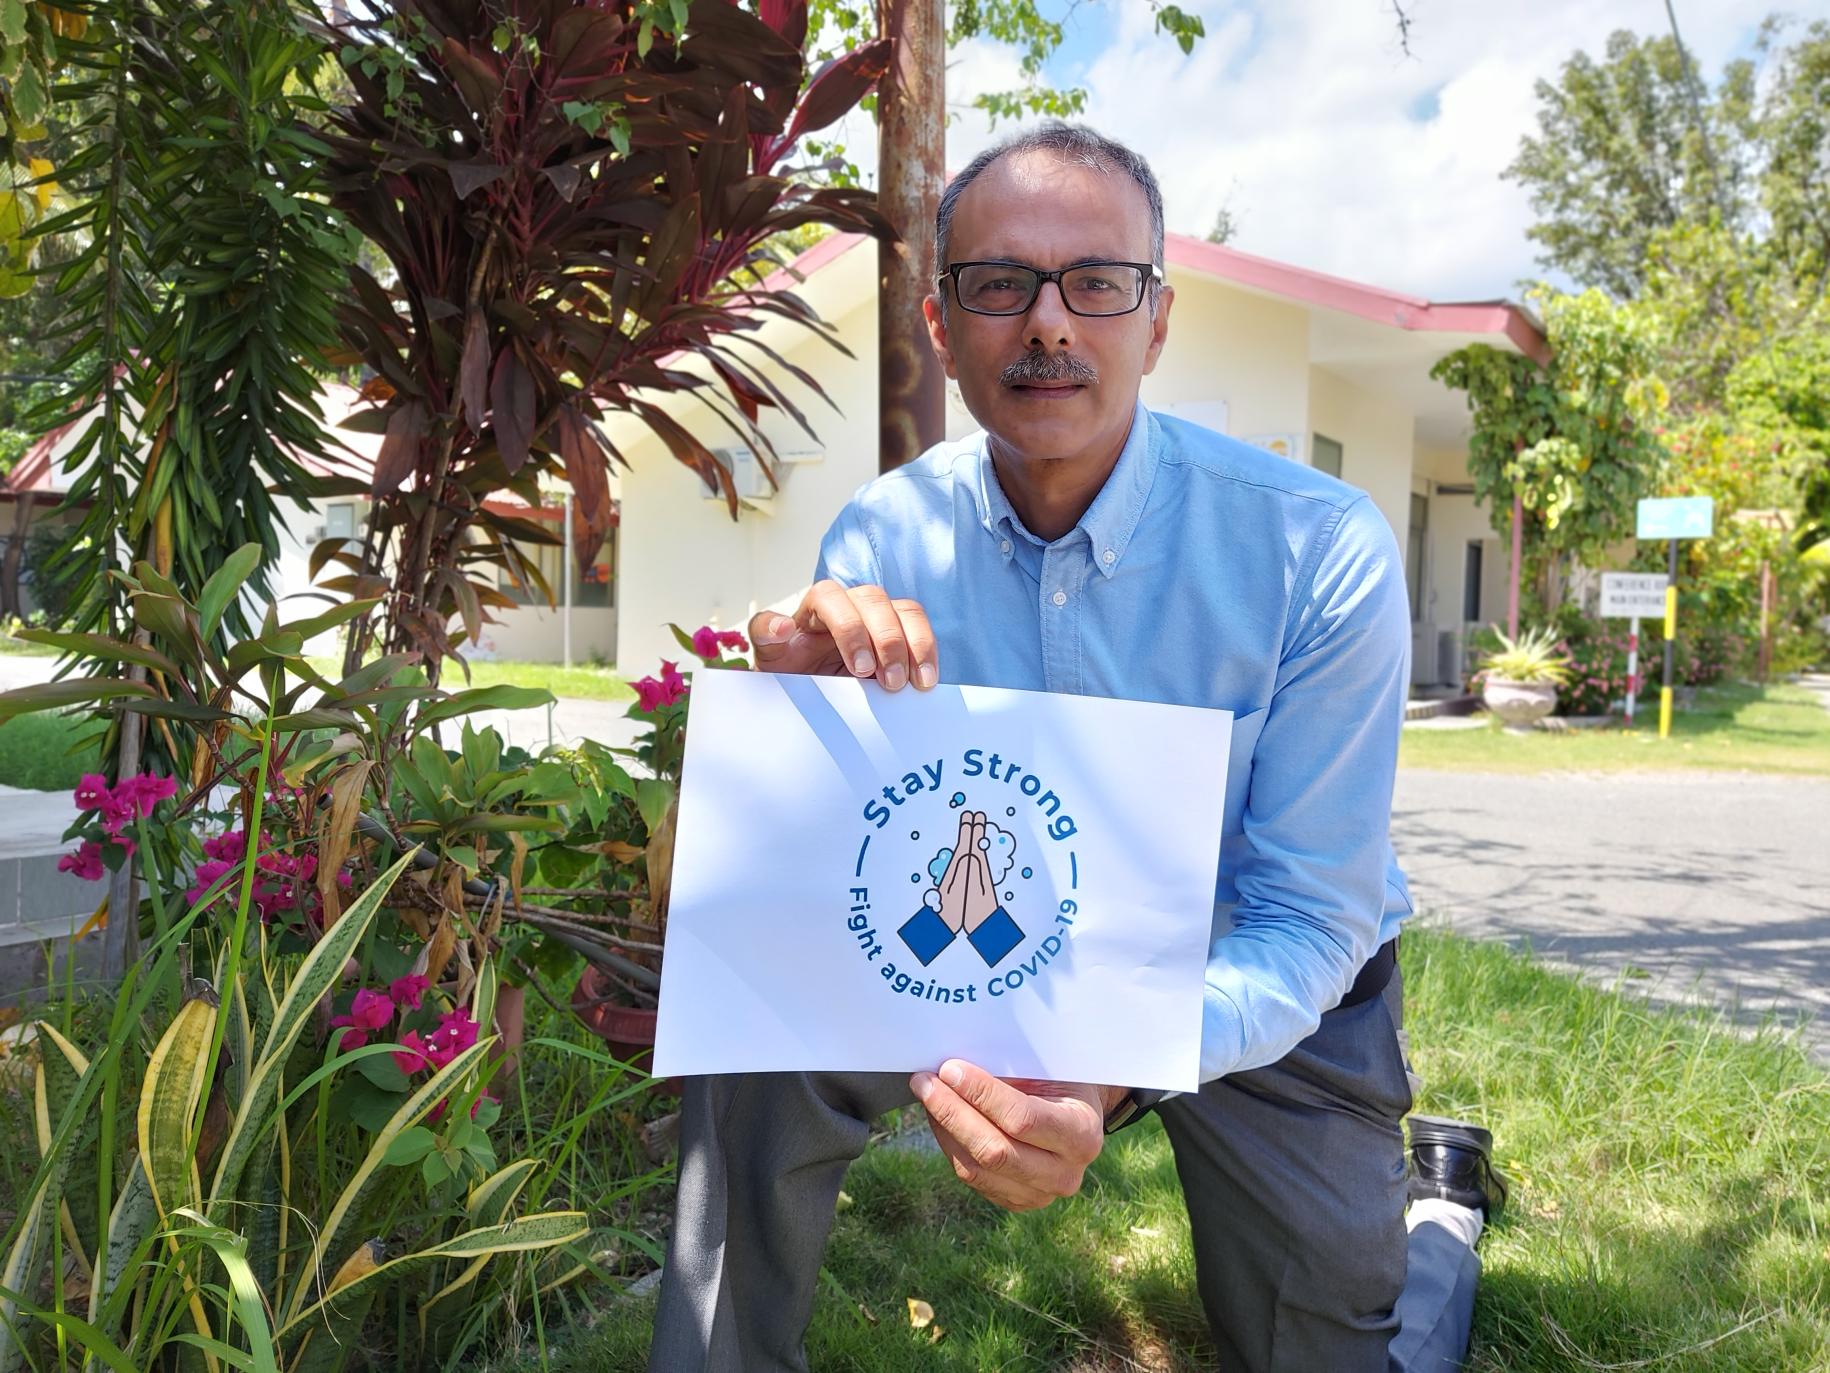 El Coordinador Residente saliente de Timor-Leste, Roy Trivedy, se arrodilla con un cartel para fomentar el lavado de manos durante la COIVD-19.